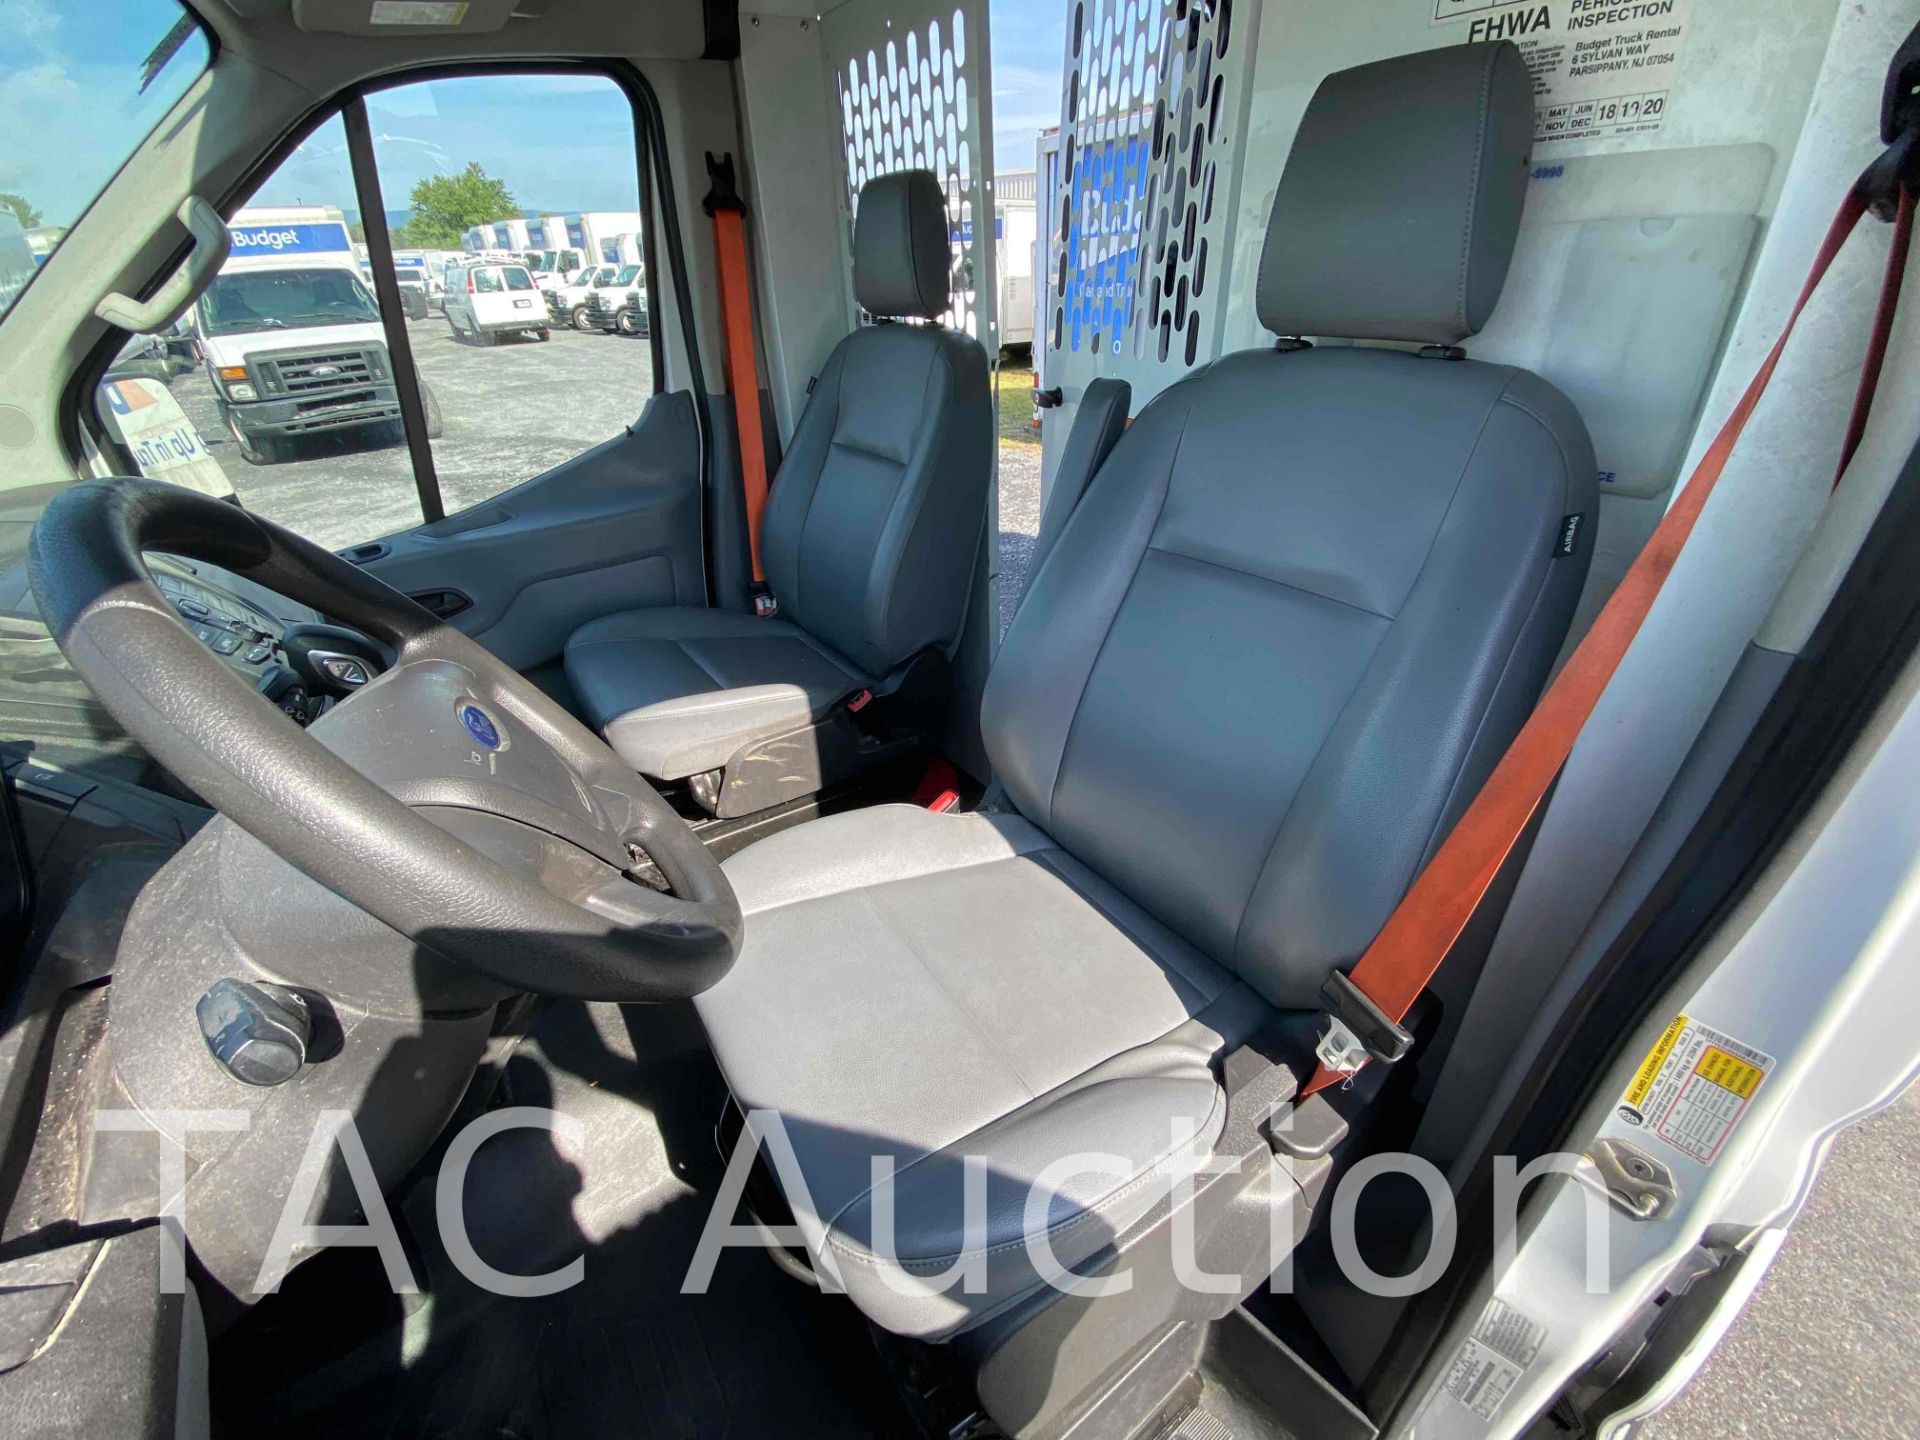 2019 Ford Transit 150 Cargo Van - Image 24 of 51